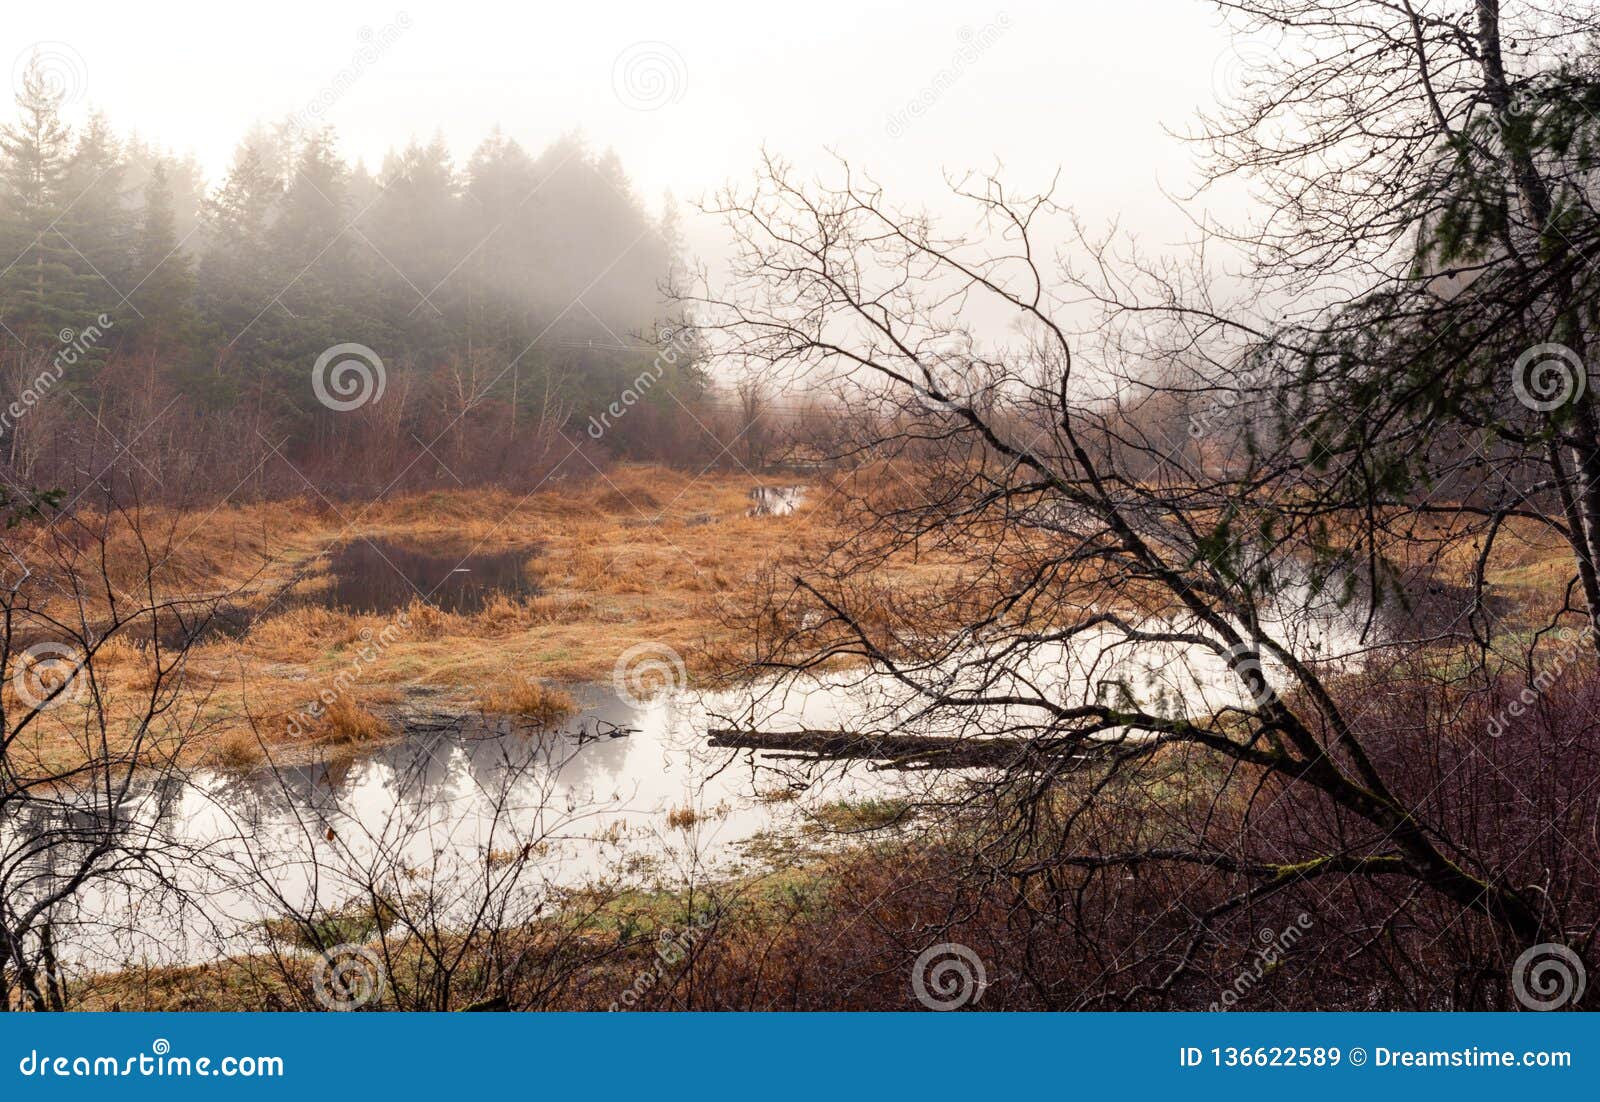 foggy marshland